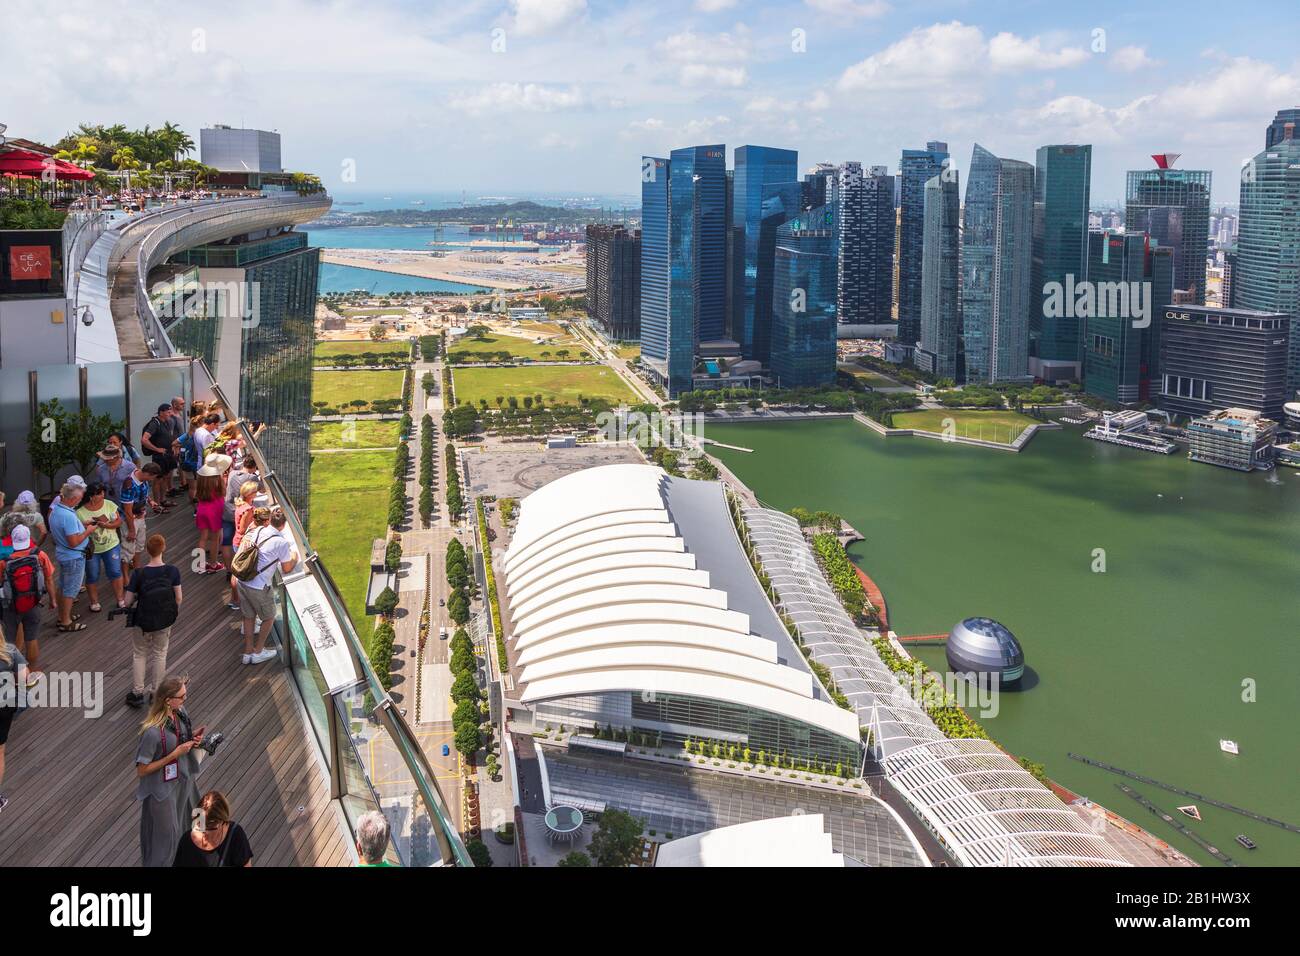 Touristes sur la terrasse d'observation de l'hôtel Marina Bay Sands surplombant Marina Bay vers le quartier des affaires de Singapour, en Asie Banque D'Images